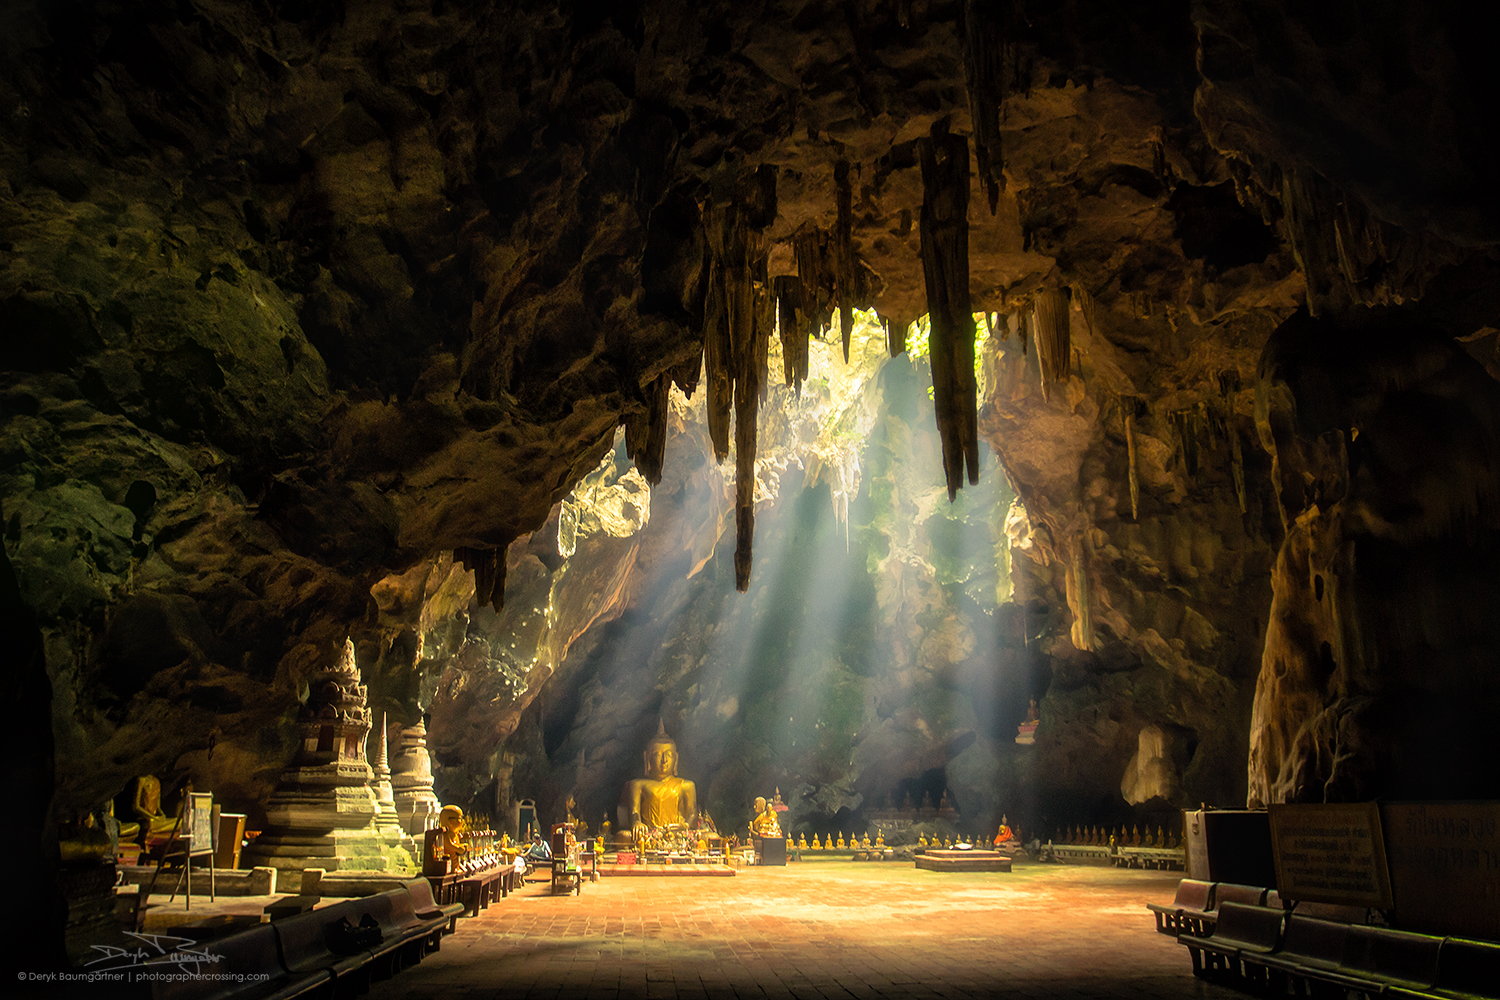 Tham.Khao.Luang.Cave.original.2025